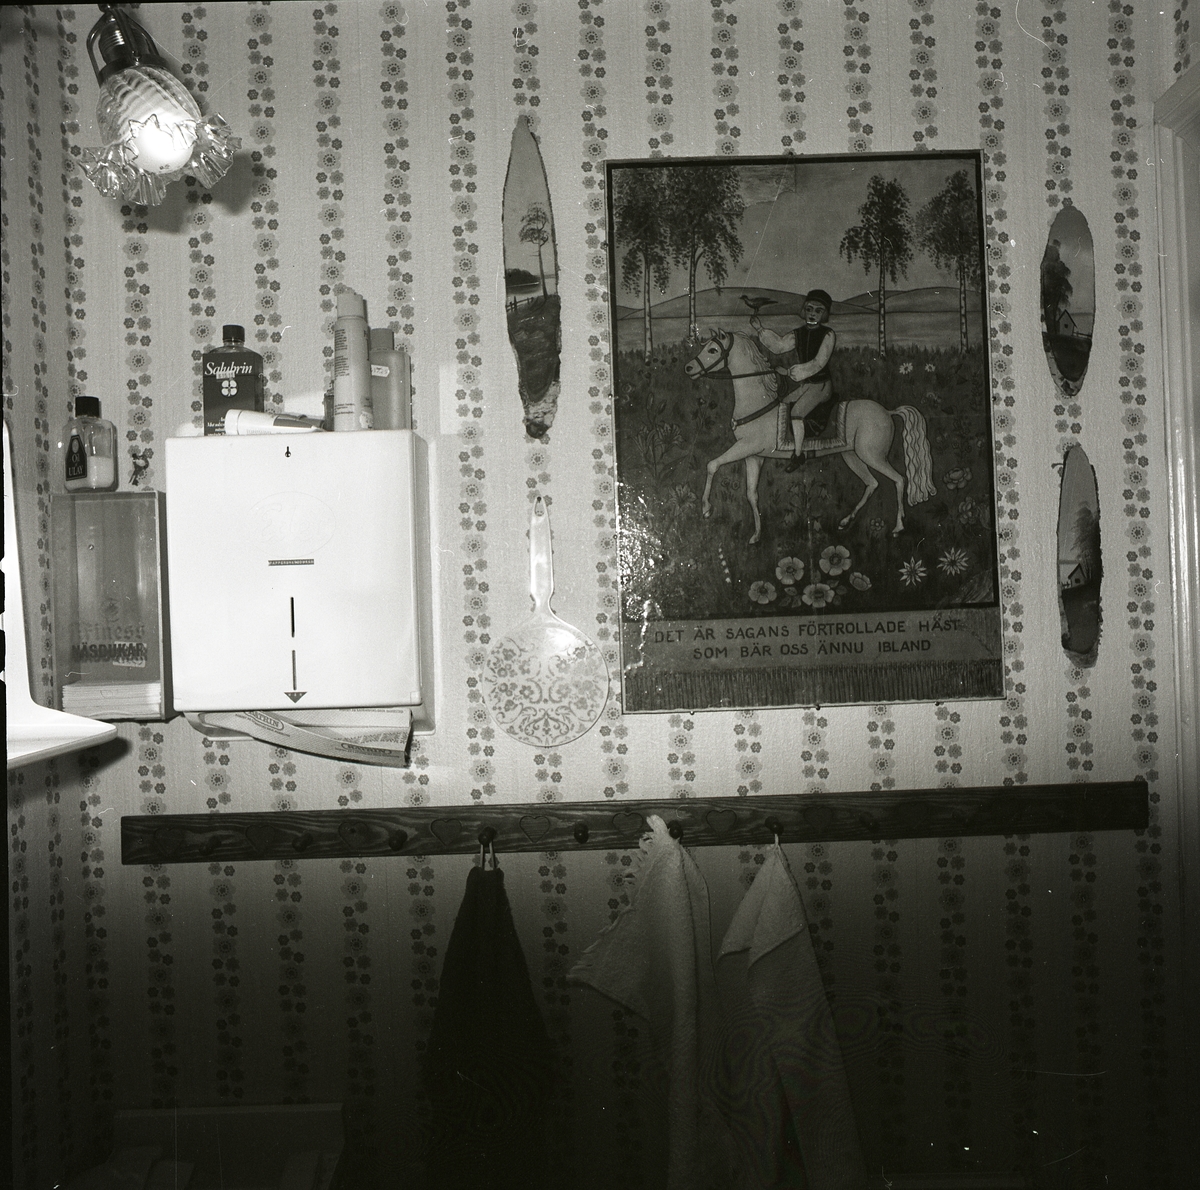 Interiör från toalettrum på nedre våningen i gården Sunnanåker, 28 april 1983. Där ser man en vägglampa, en väggbonad och en knoppbräda för handdukar.